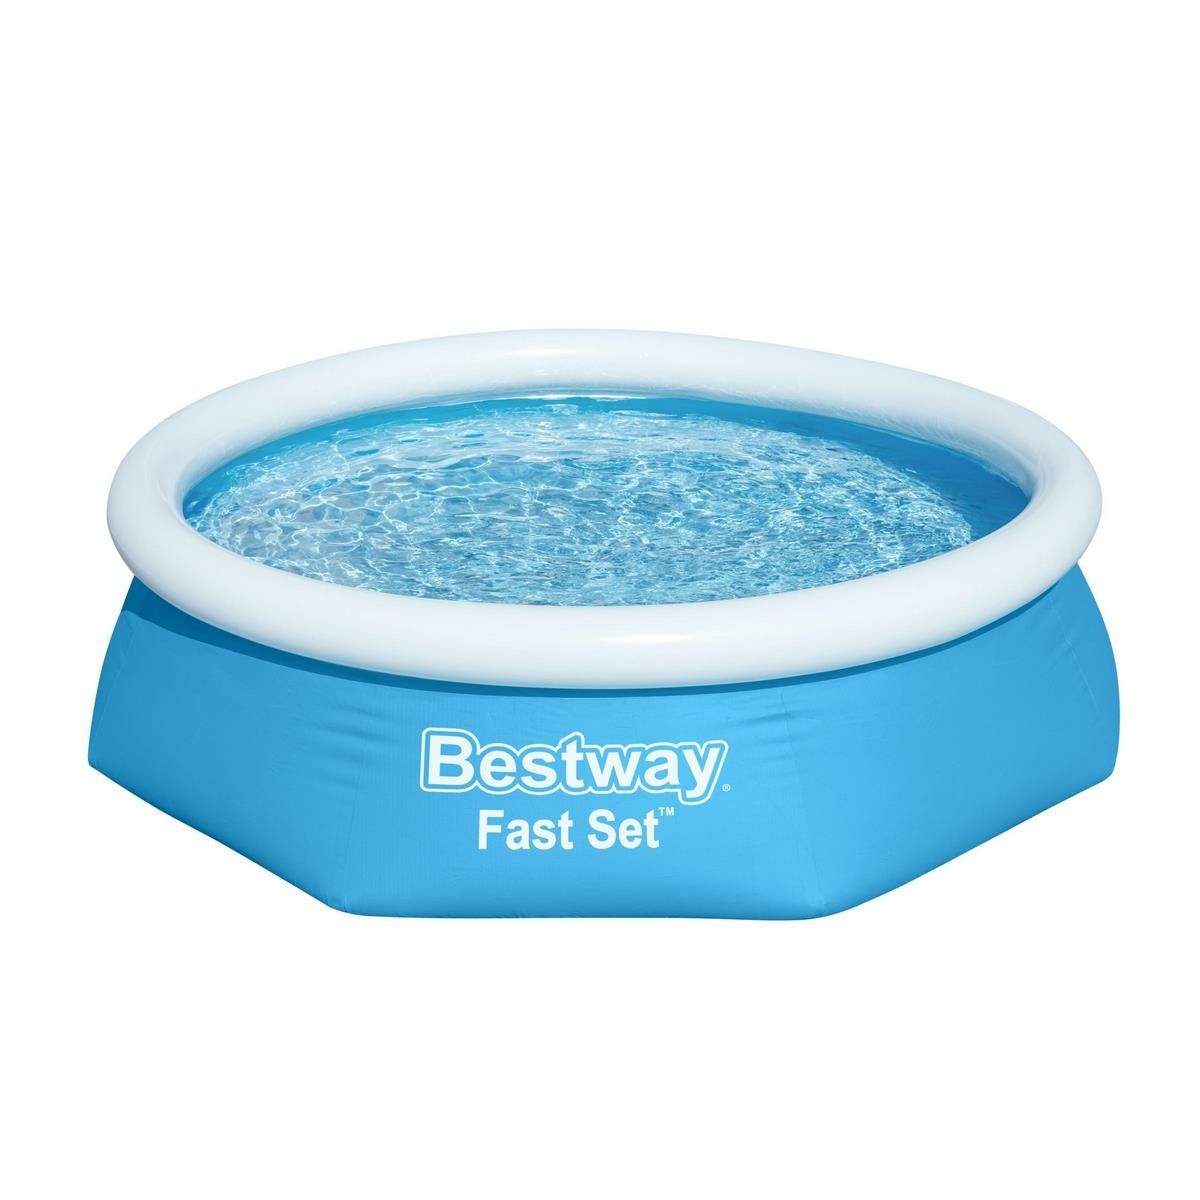 Bestway Nafukovací bazén Fast Set, 244 x 61 cm - 4home.cz